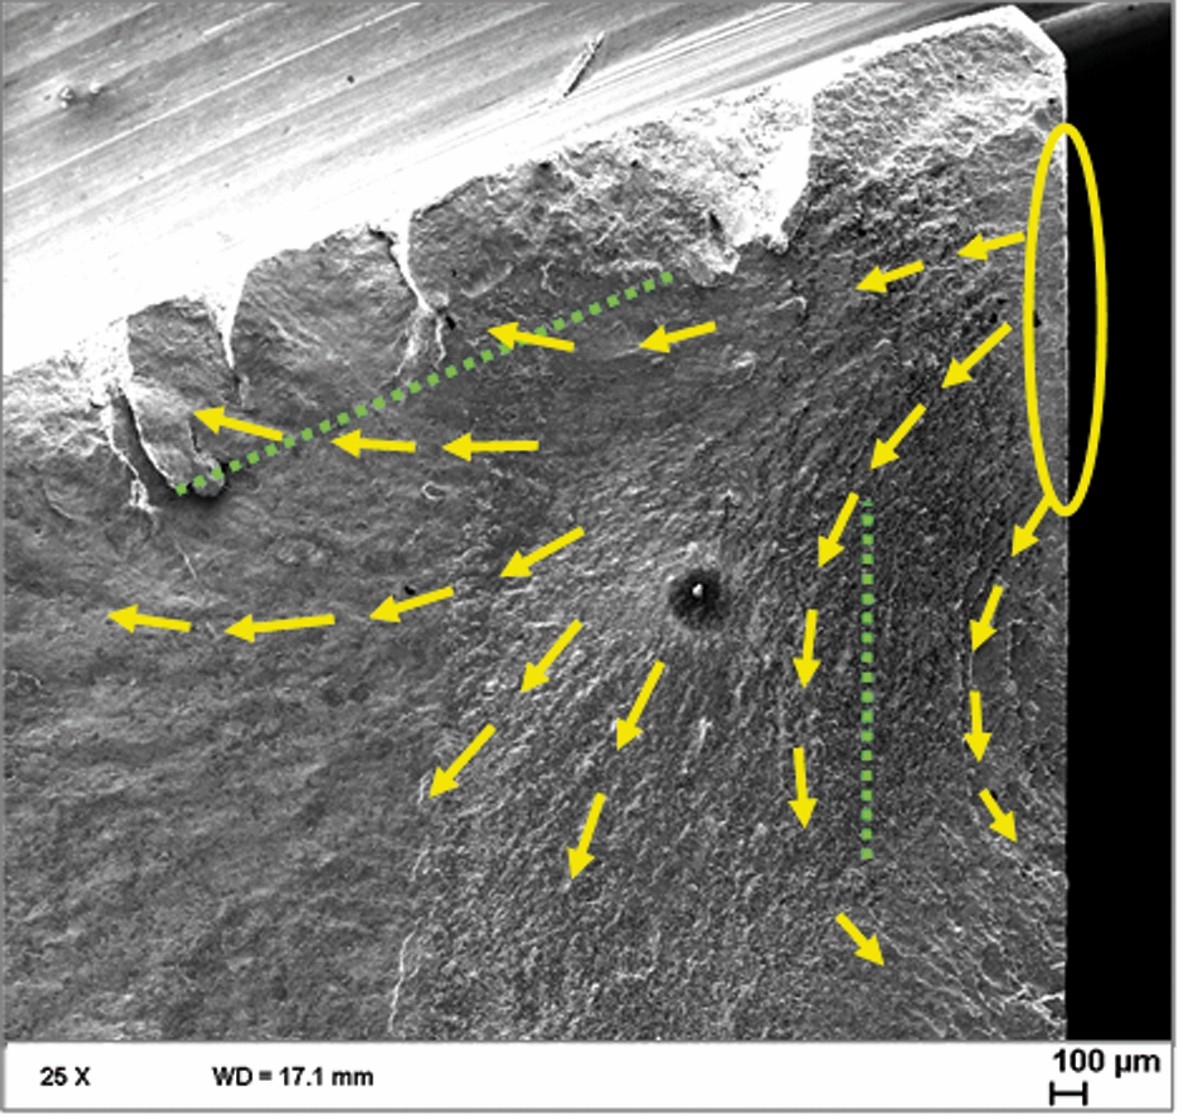 Bild 11 REM-Aufnahmen mit Markierung des Rissausgangsgebietes (Ellipse), des Rissfortschritts (Pfeile) und der Einsatzhärtetiefe (CHD): Rissausgangsgebiet an der Wellenoberfläche nahe der Nutkante (links); Rissaus-gangsgebiet an der Nutflanke nahe der Nutkante (rechts). Bild: Verfasser